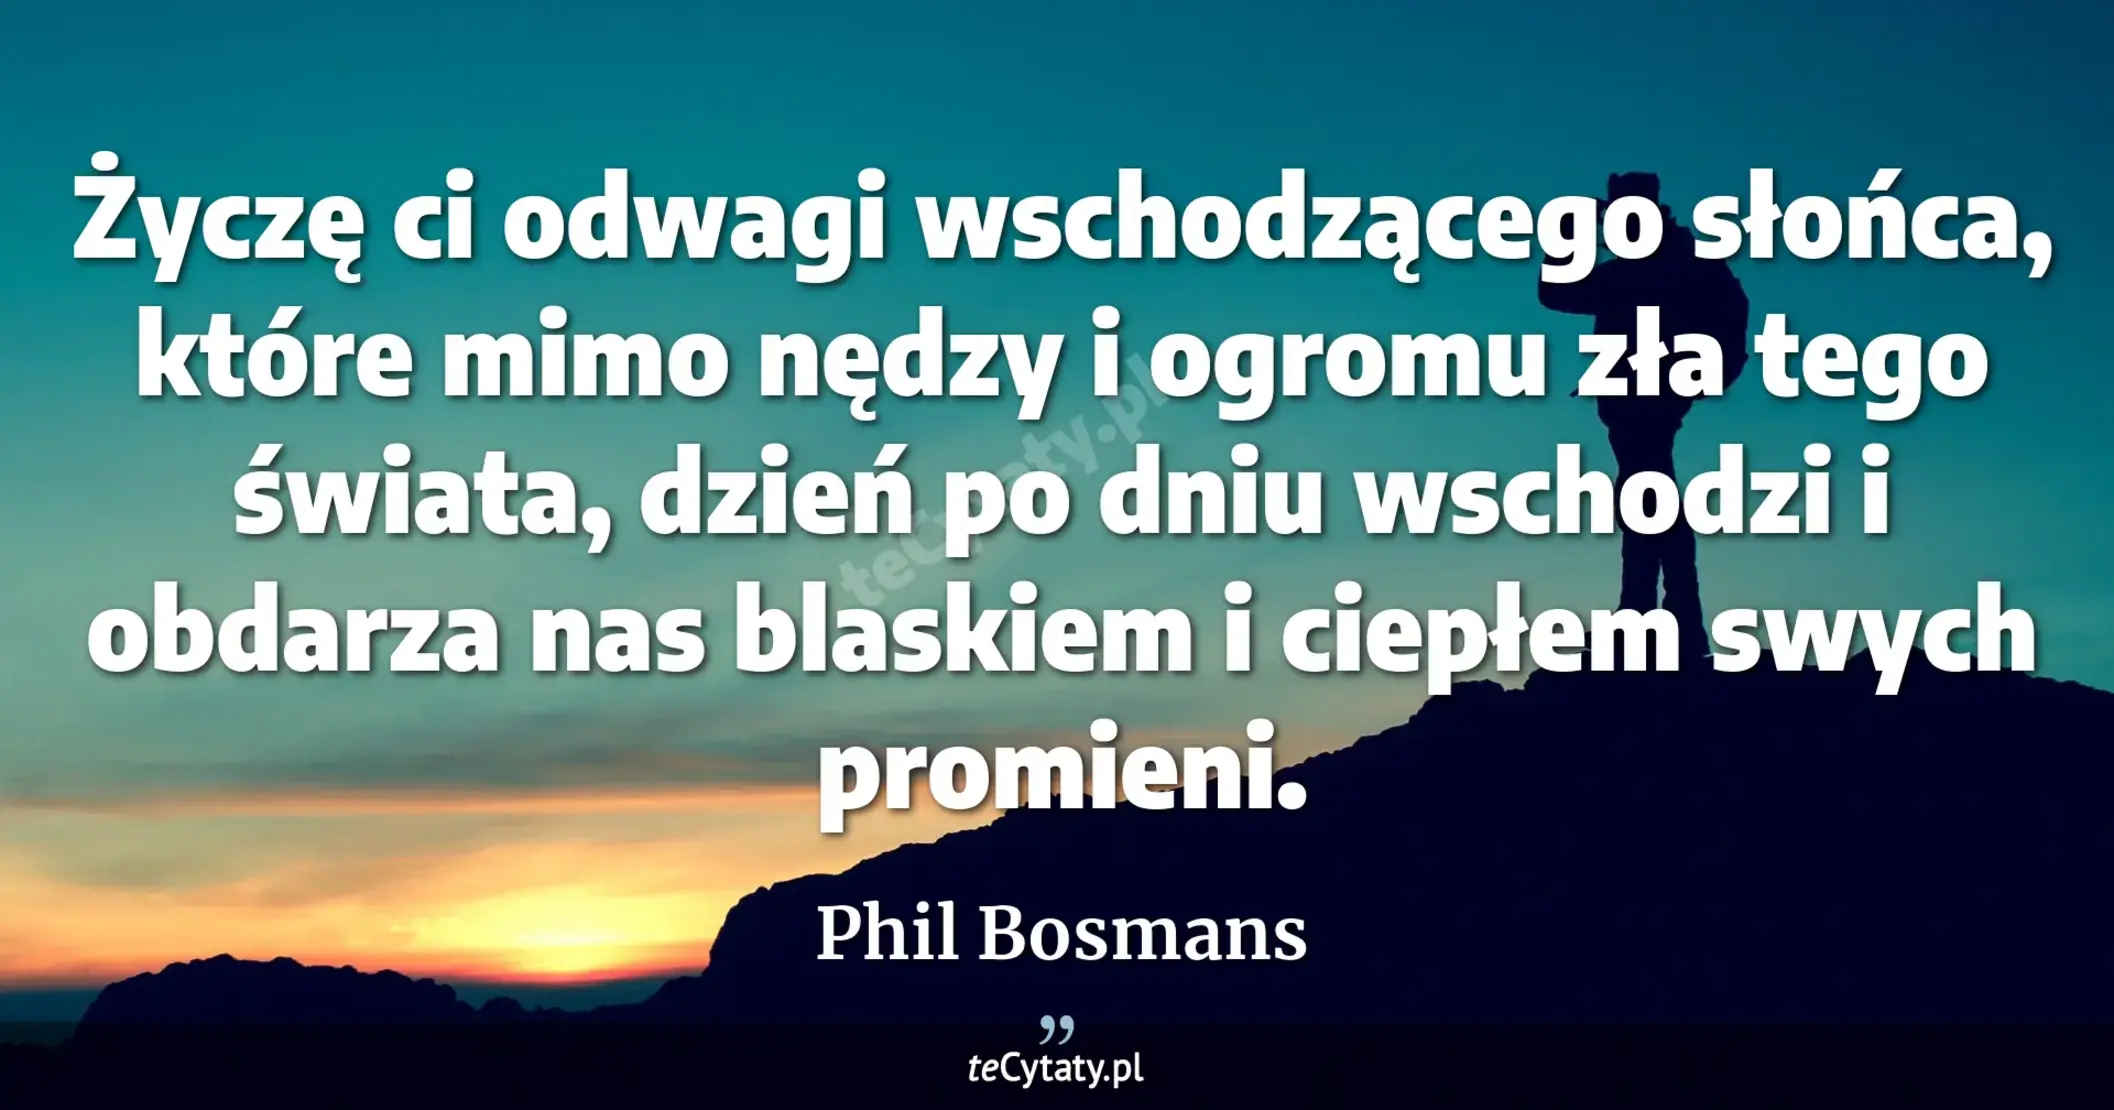 Życzę ci odwagi wschodzącego słońca, które mimo nędzy i ogromu zła tego świata, dzień po dniu wschodzi i obdarza nas blaskiem i ciepłem swych promieni. - Phil Bosmans